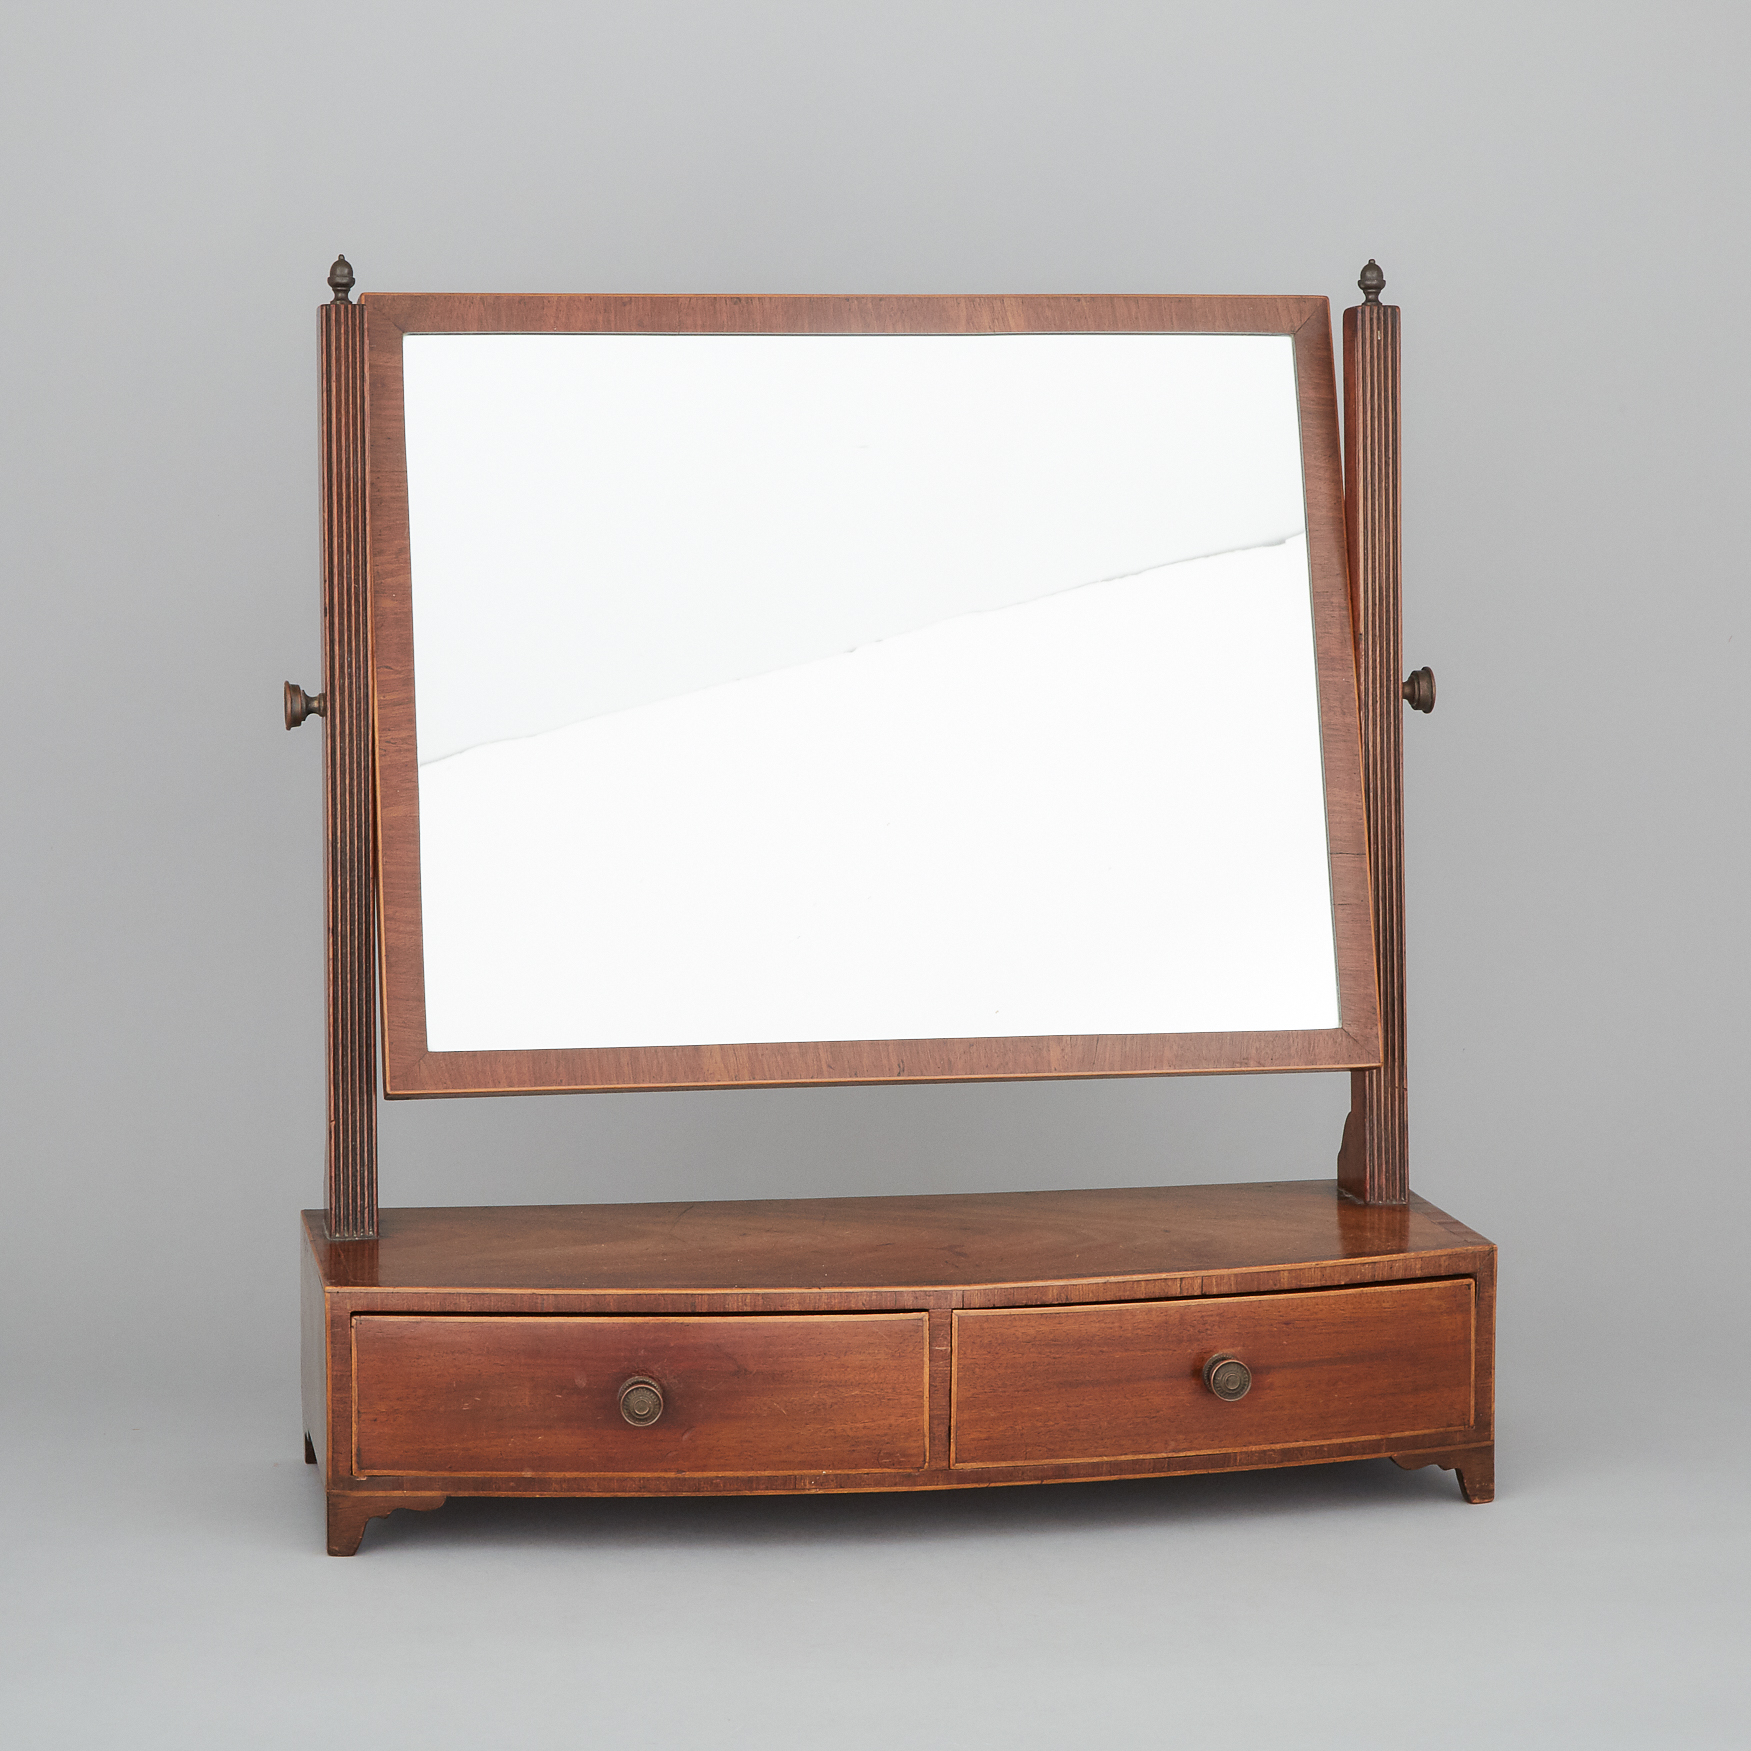 English Regency Cross Banded Mahogany Dresser Mirror, early 19th century